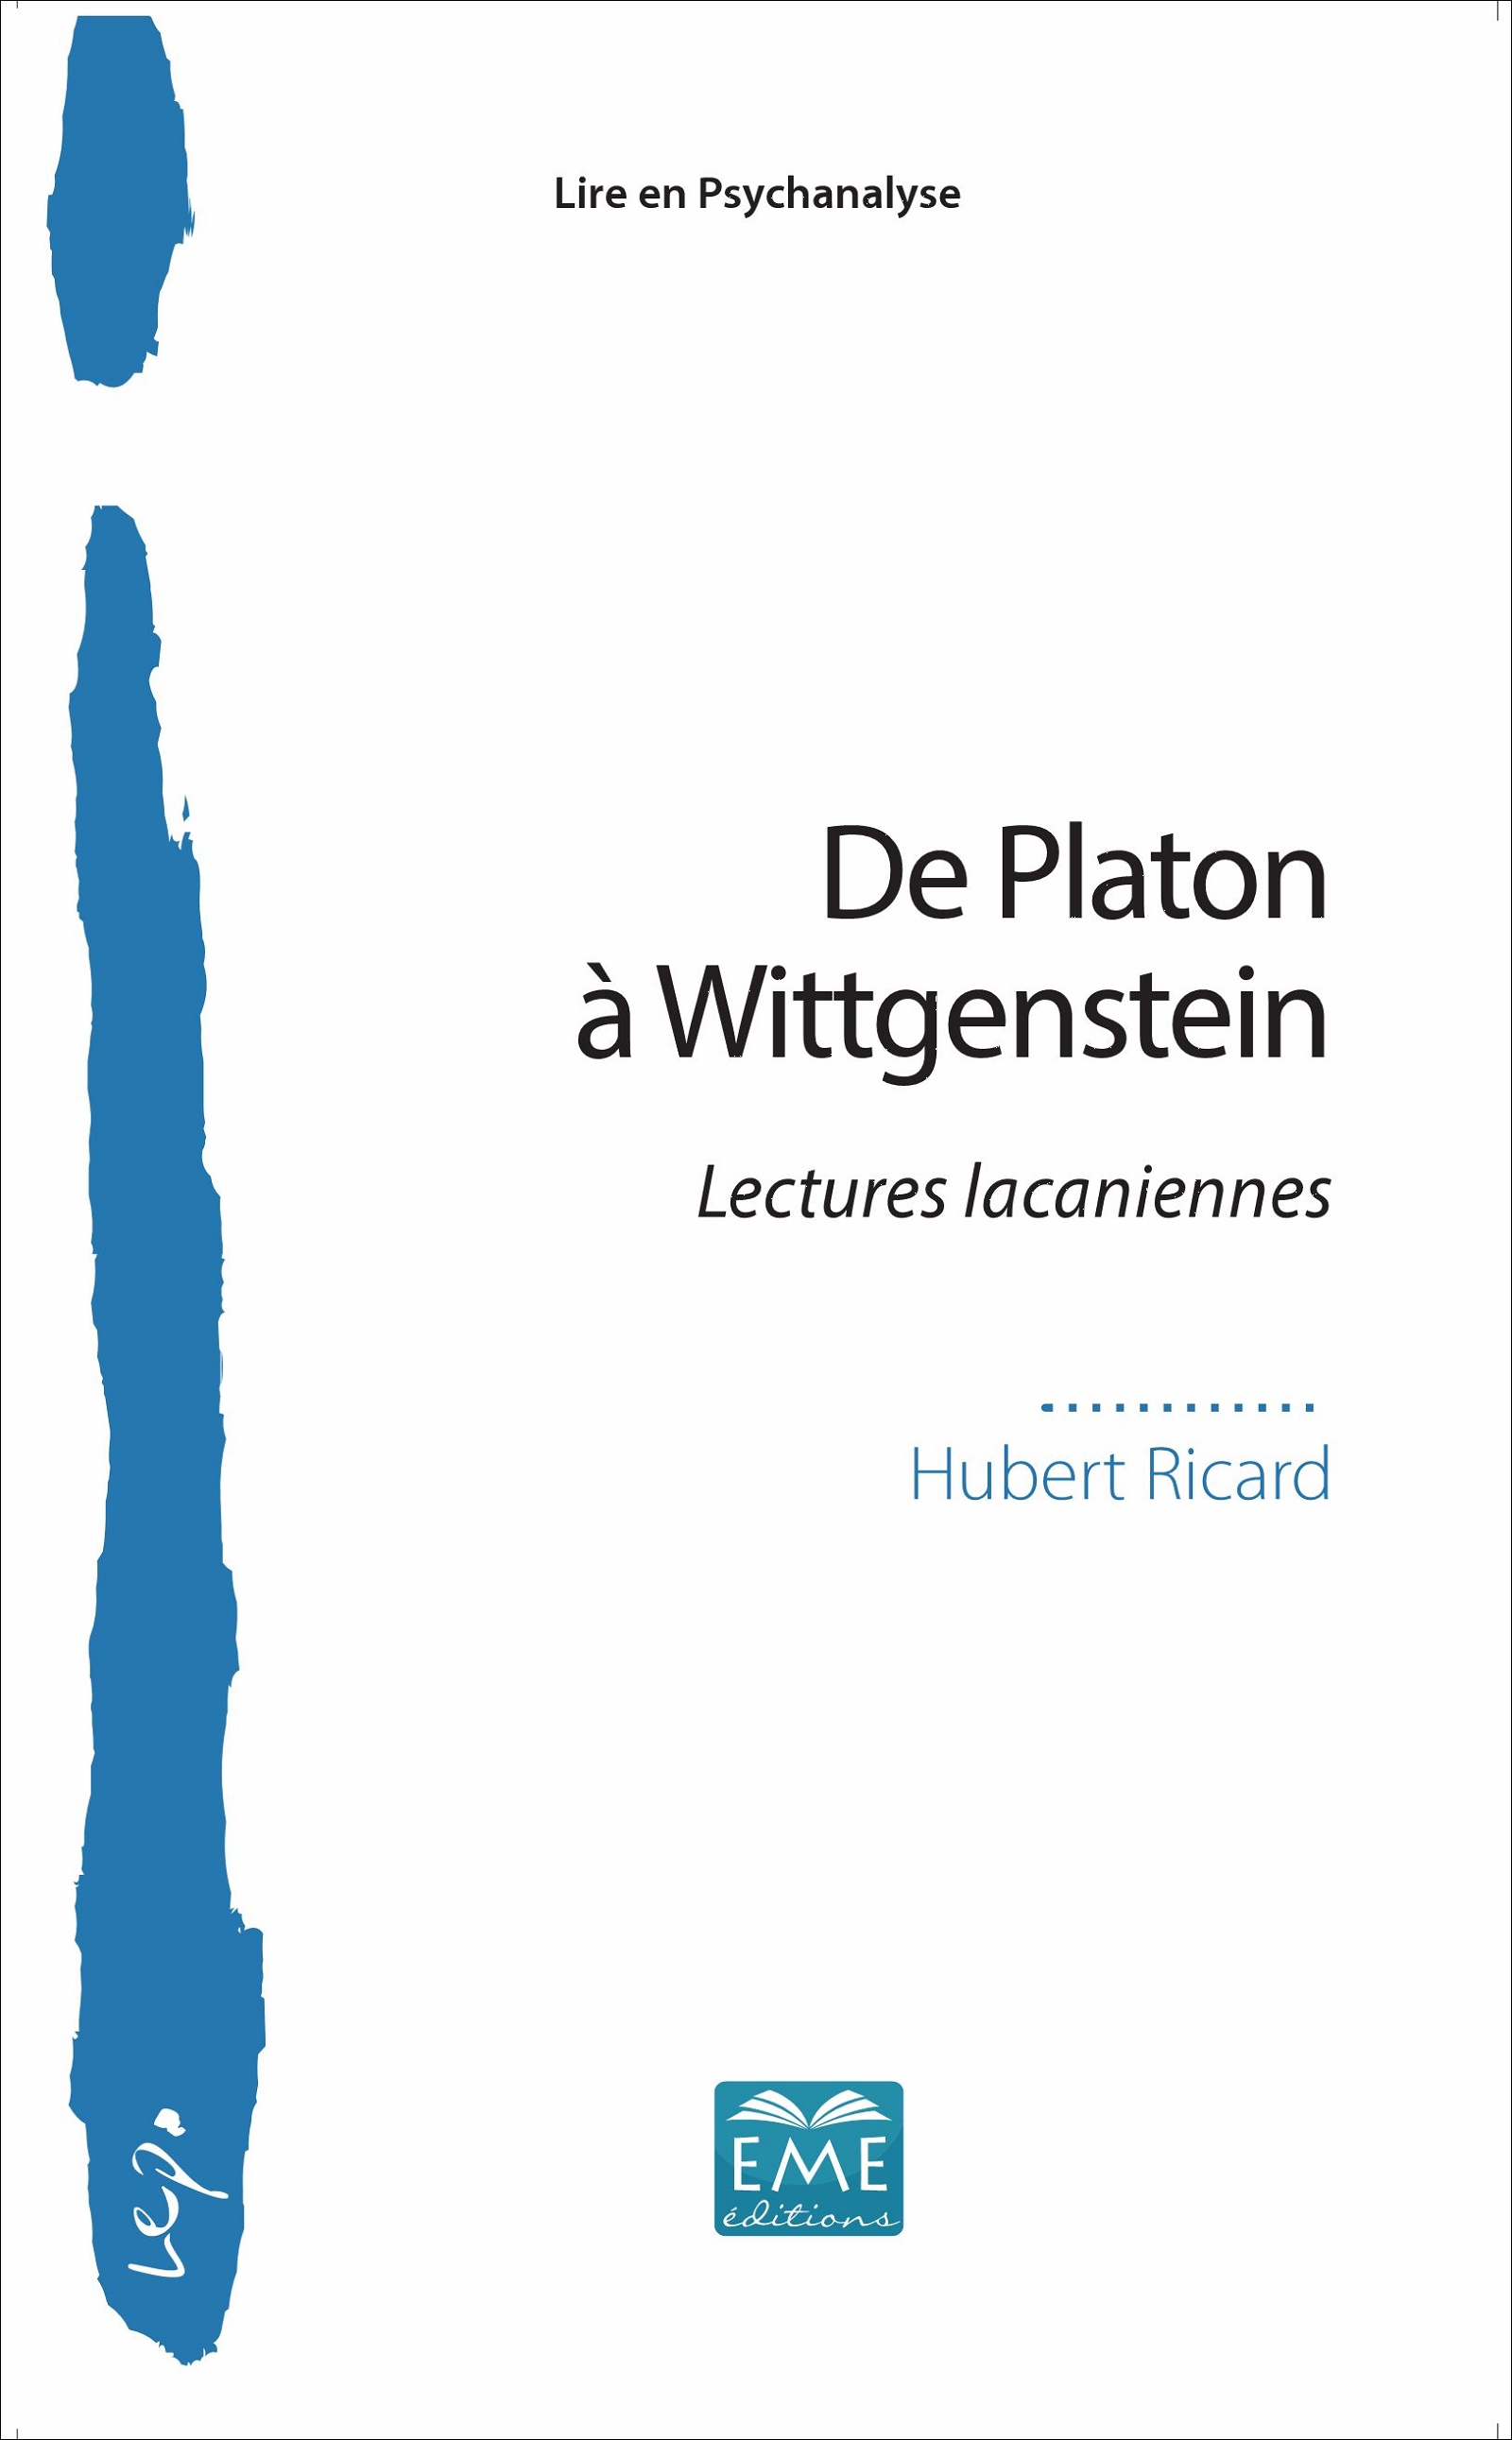 Couverture du livre d'Hubert Ricard "De Platon à Wittgenstein"